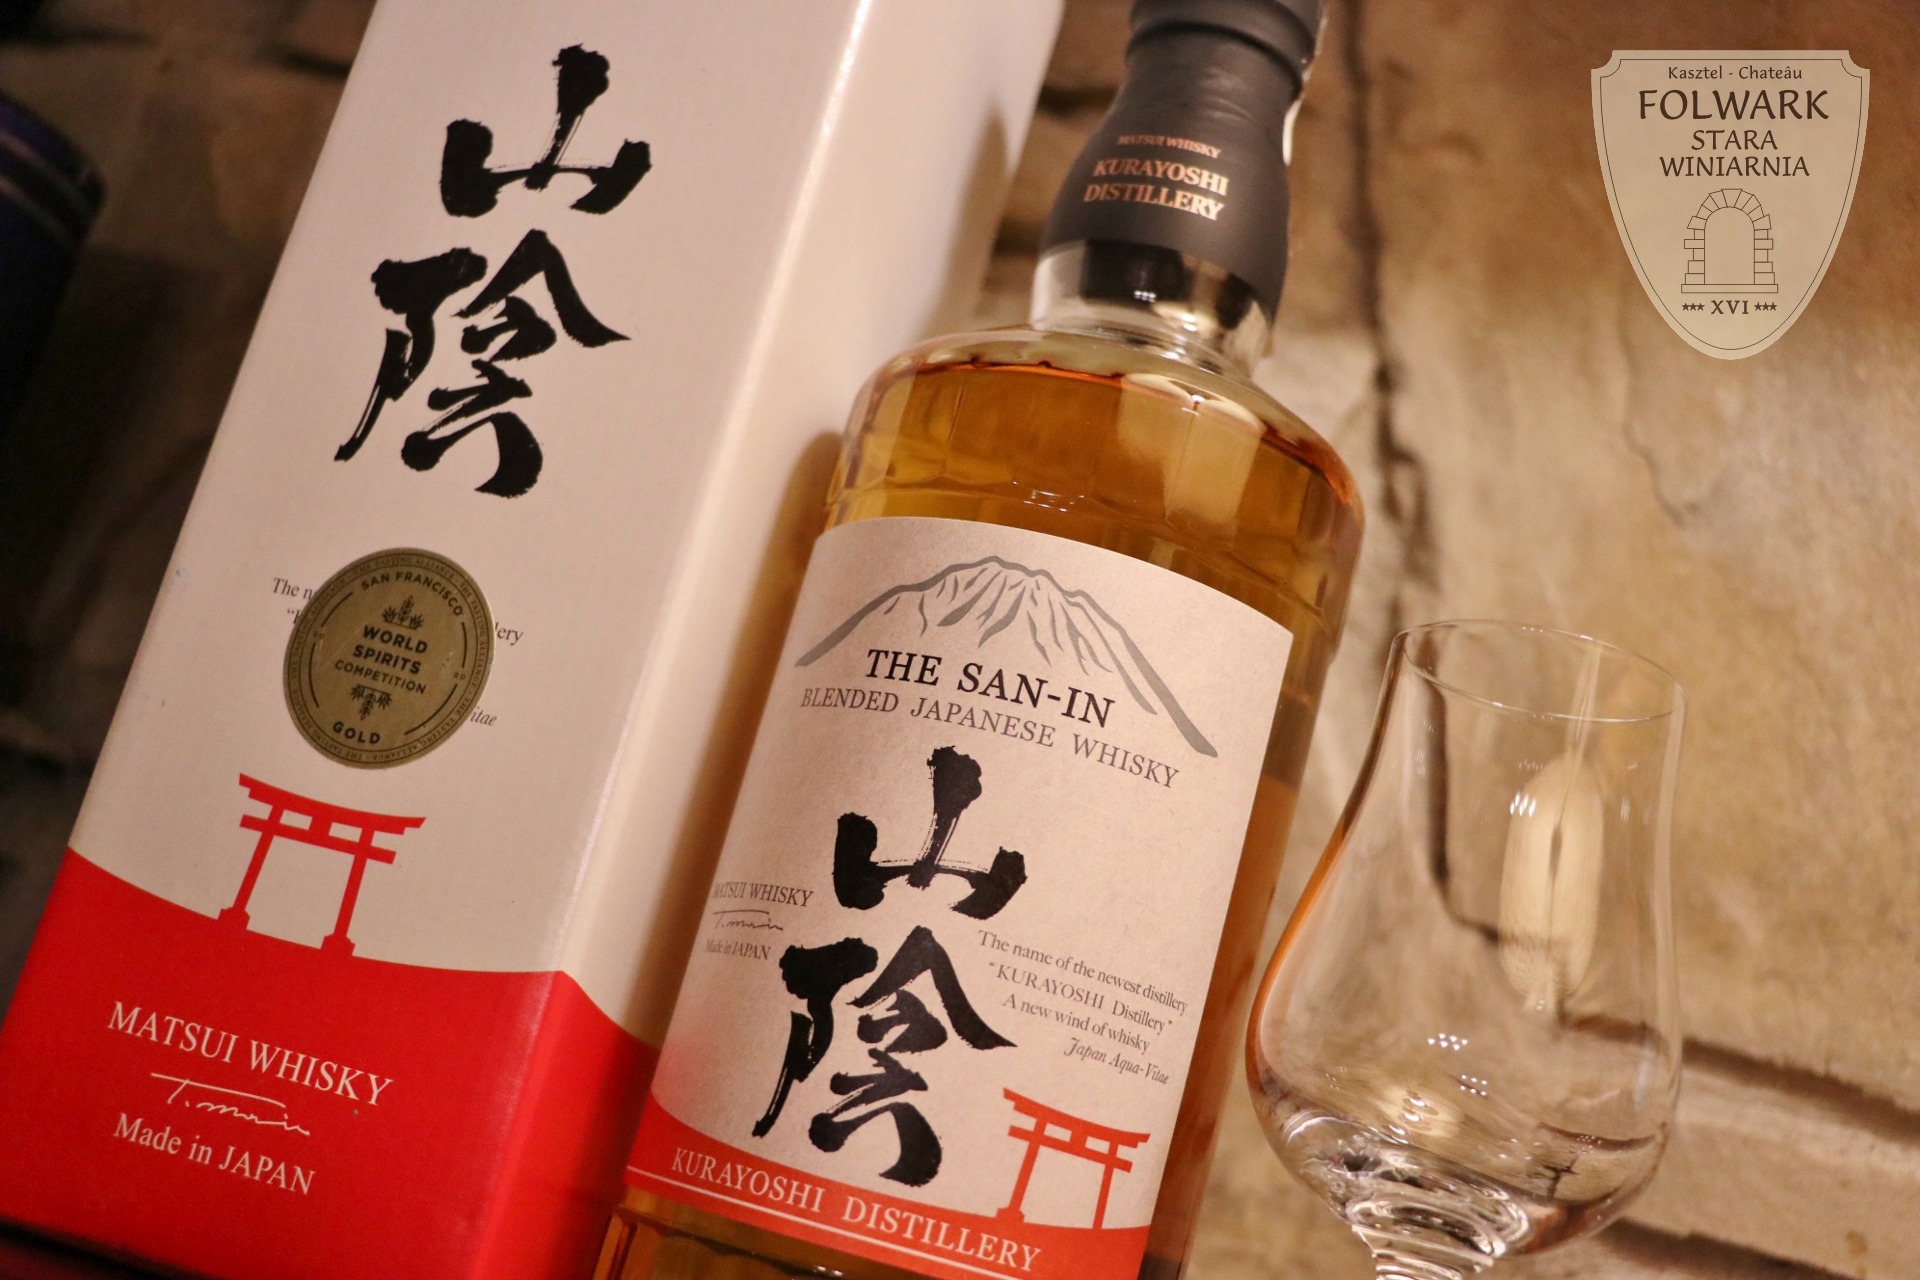 The San-in Blended Japanese Whisky